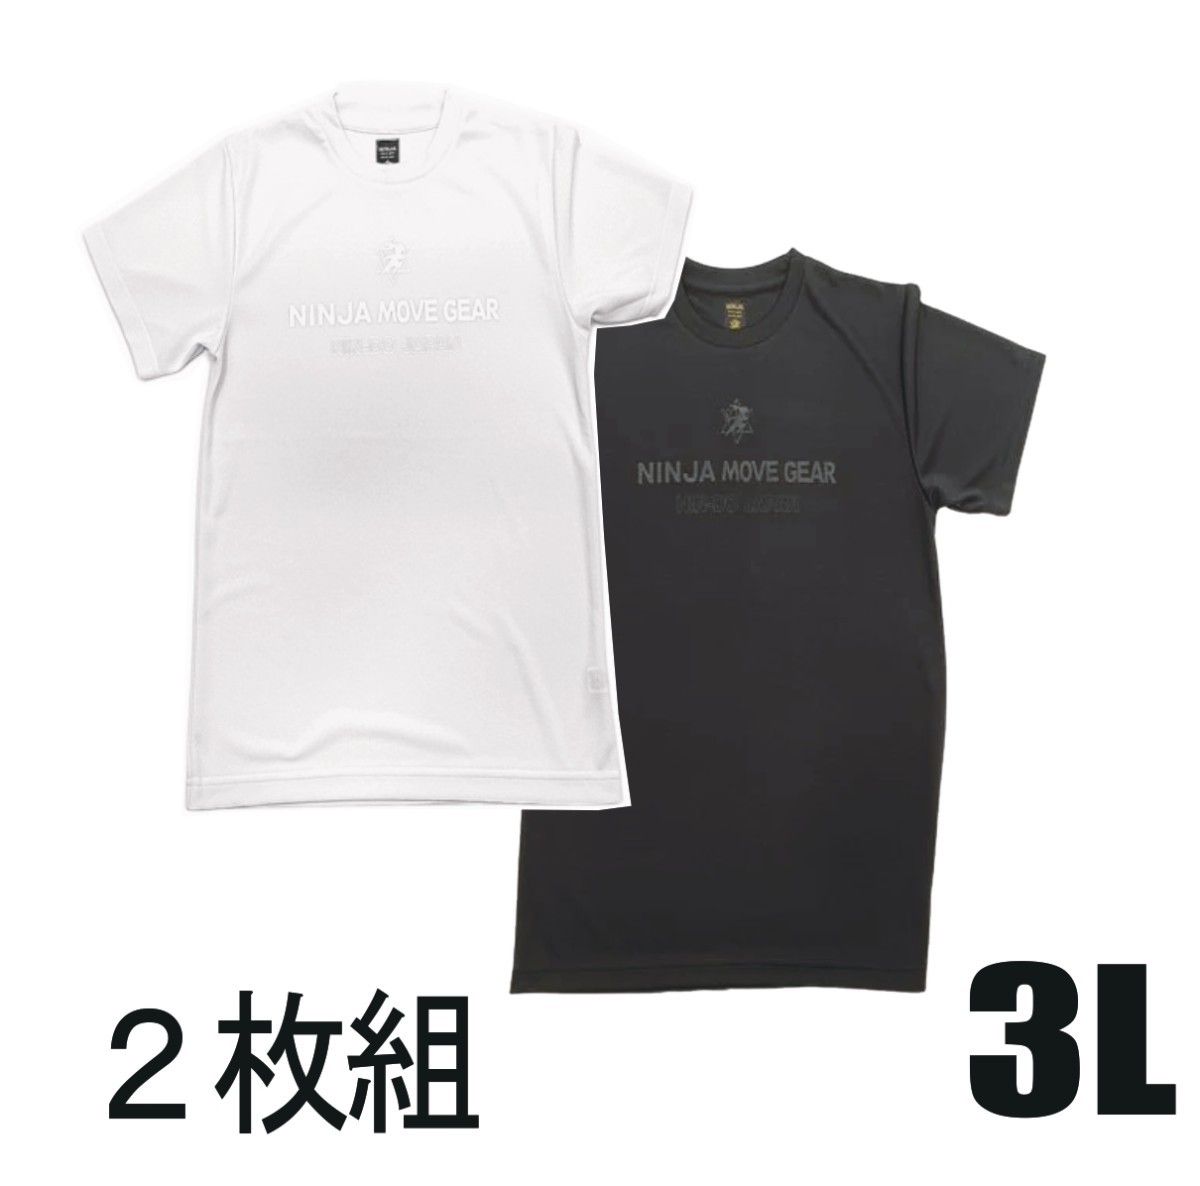 【２枚セット】リライブ超えのtシャツ(白3L+黒3L)YouTube 竹之内社長の【波乱万丈】で紹介 メンズ レディース